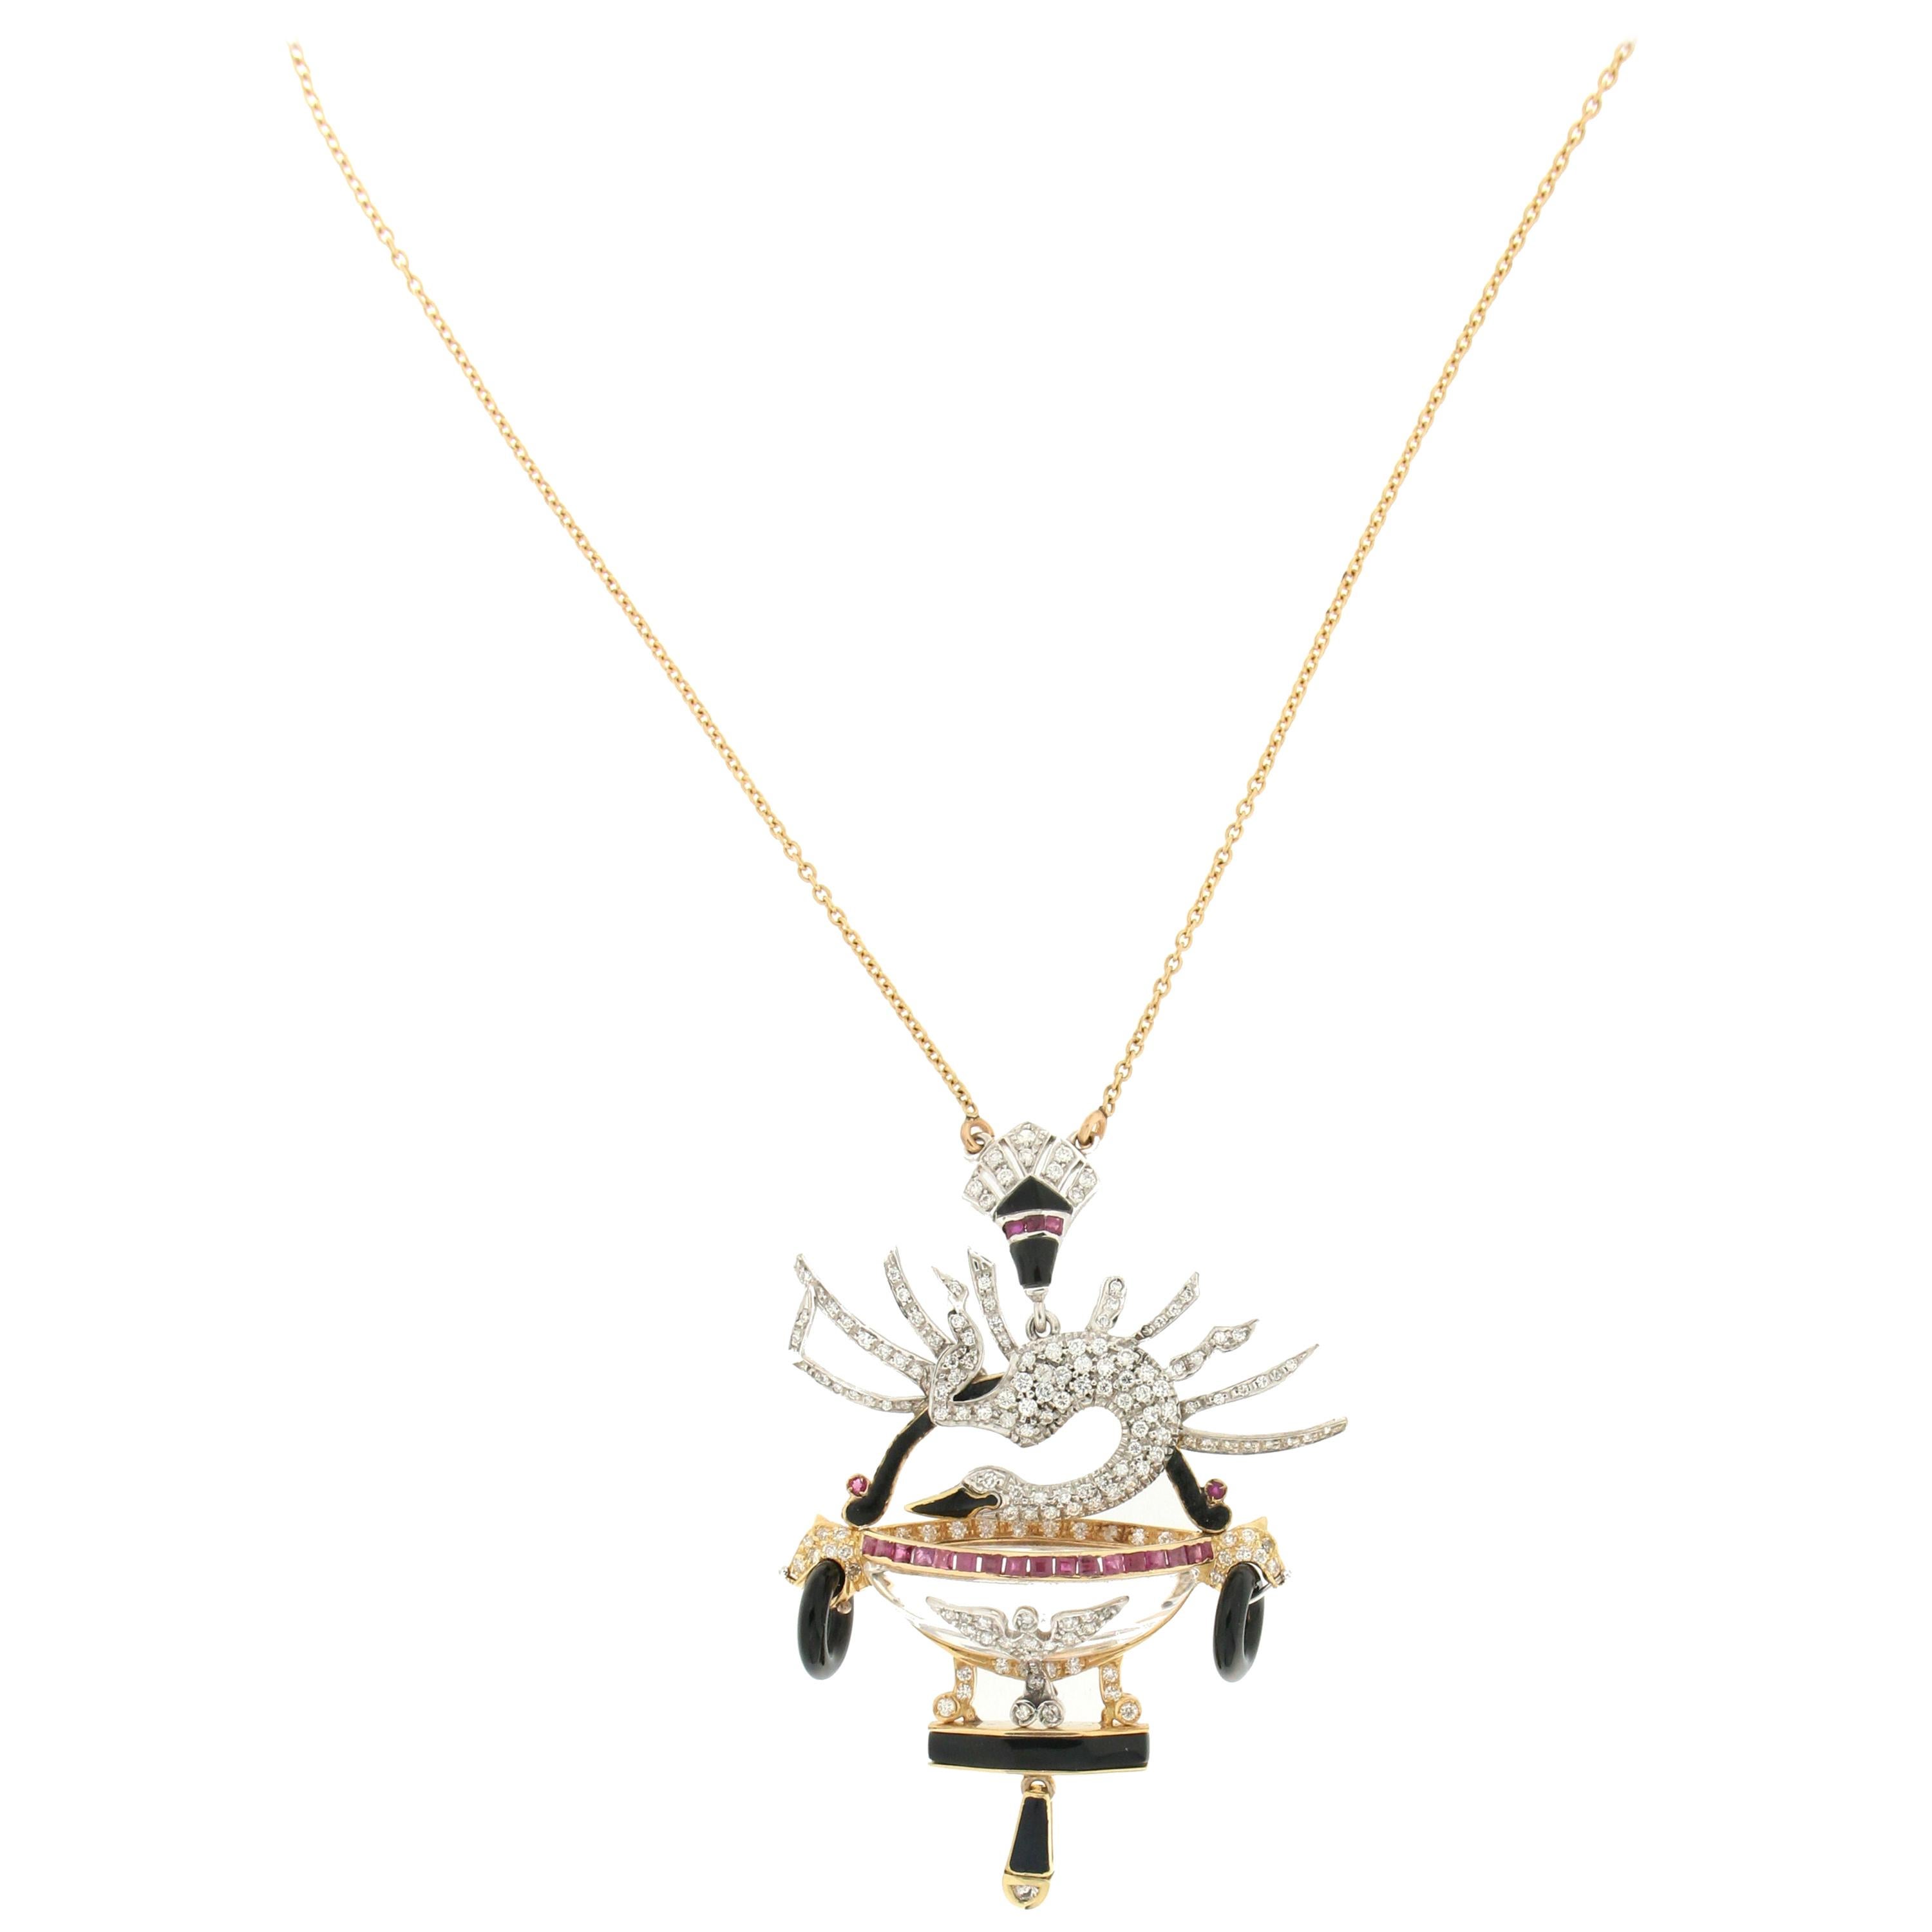 Handgefertigte Halskette mit Anhänger, Schwan 18 Karat Gold Diamanten Rubin Onyx